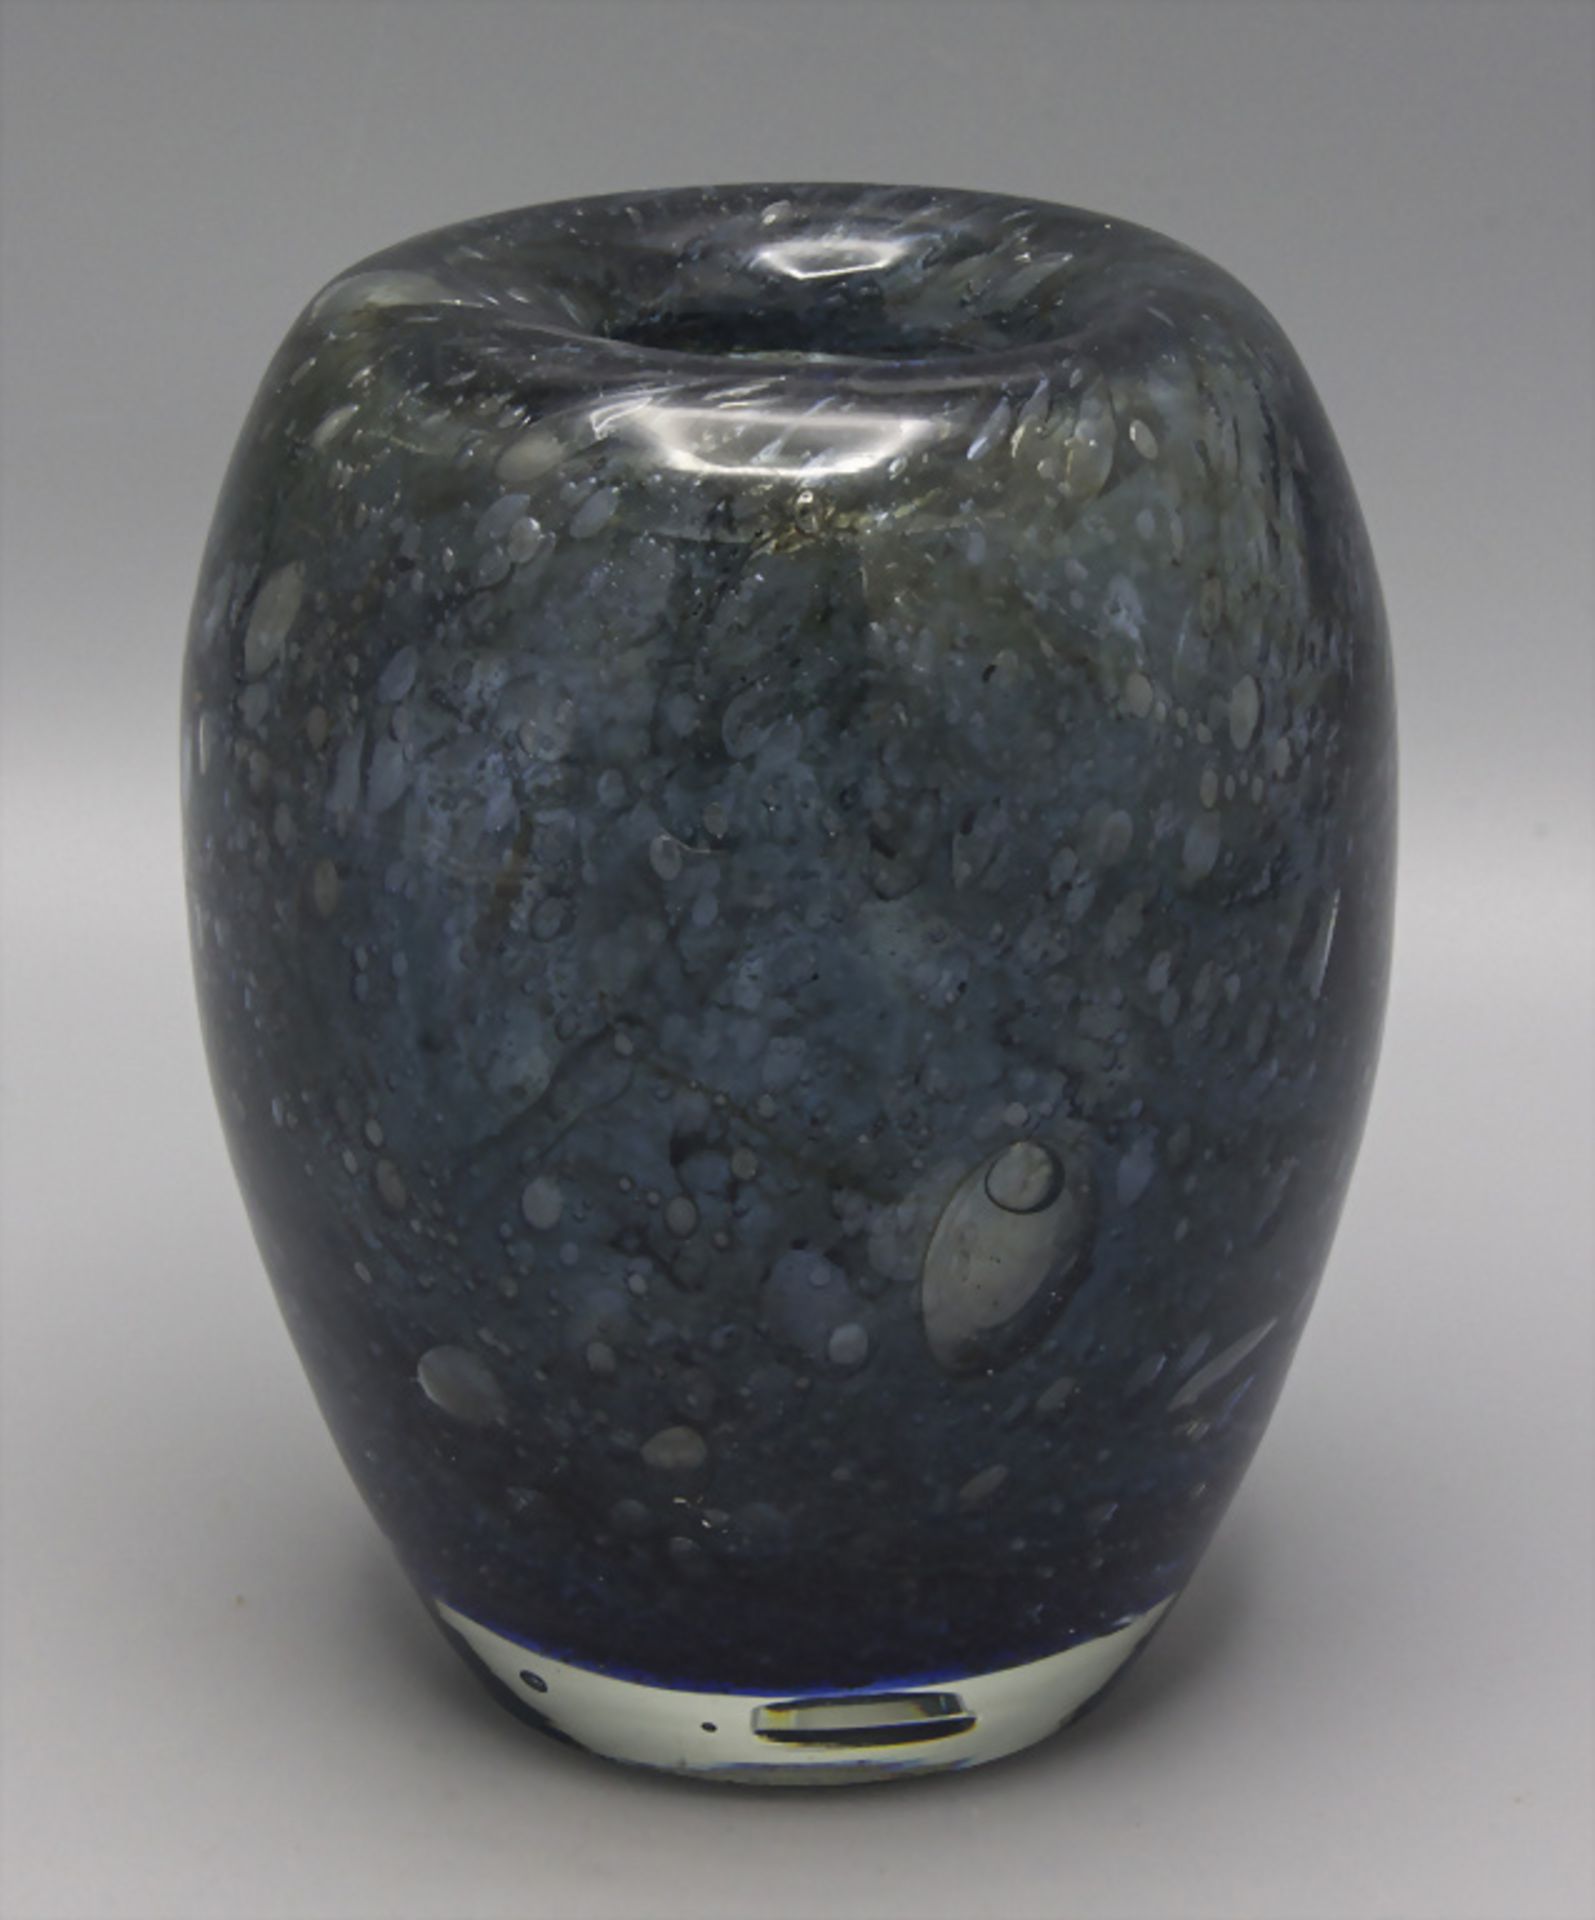 Vase 'Dexel-Ei' / A vase 'Dexel egg', Walter Dexel für WMF, 1930er Jahre